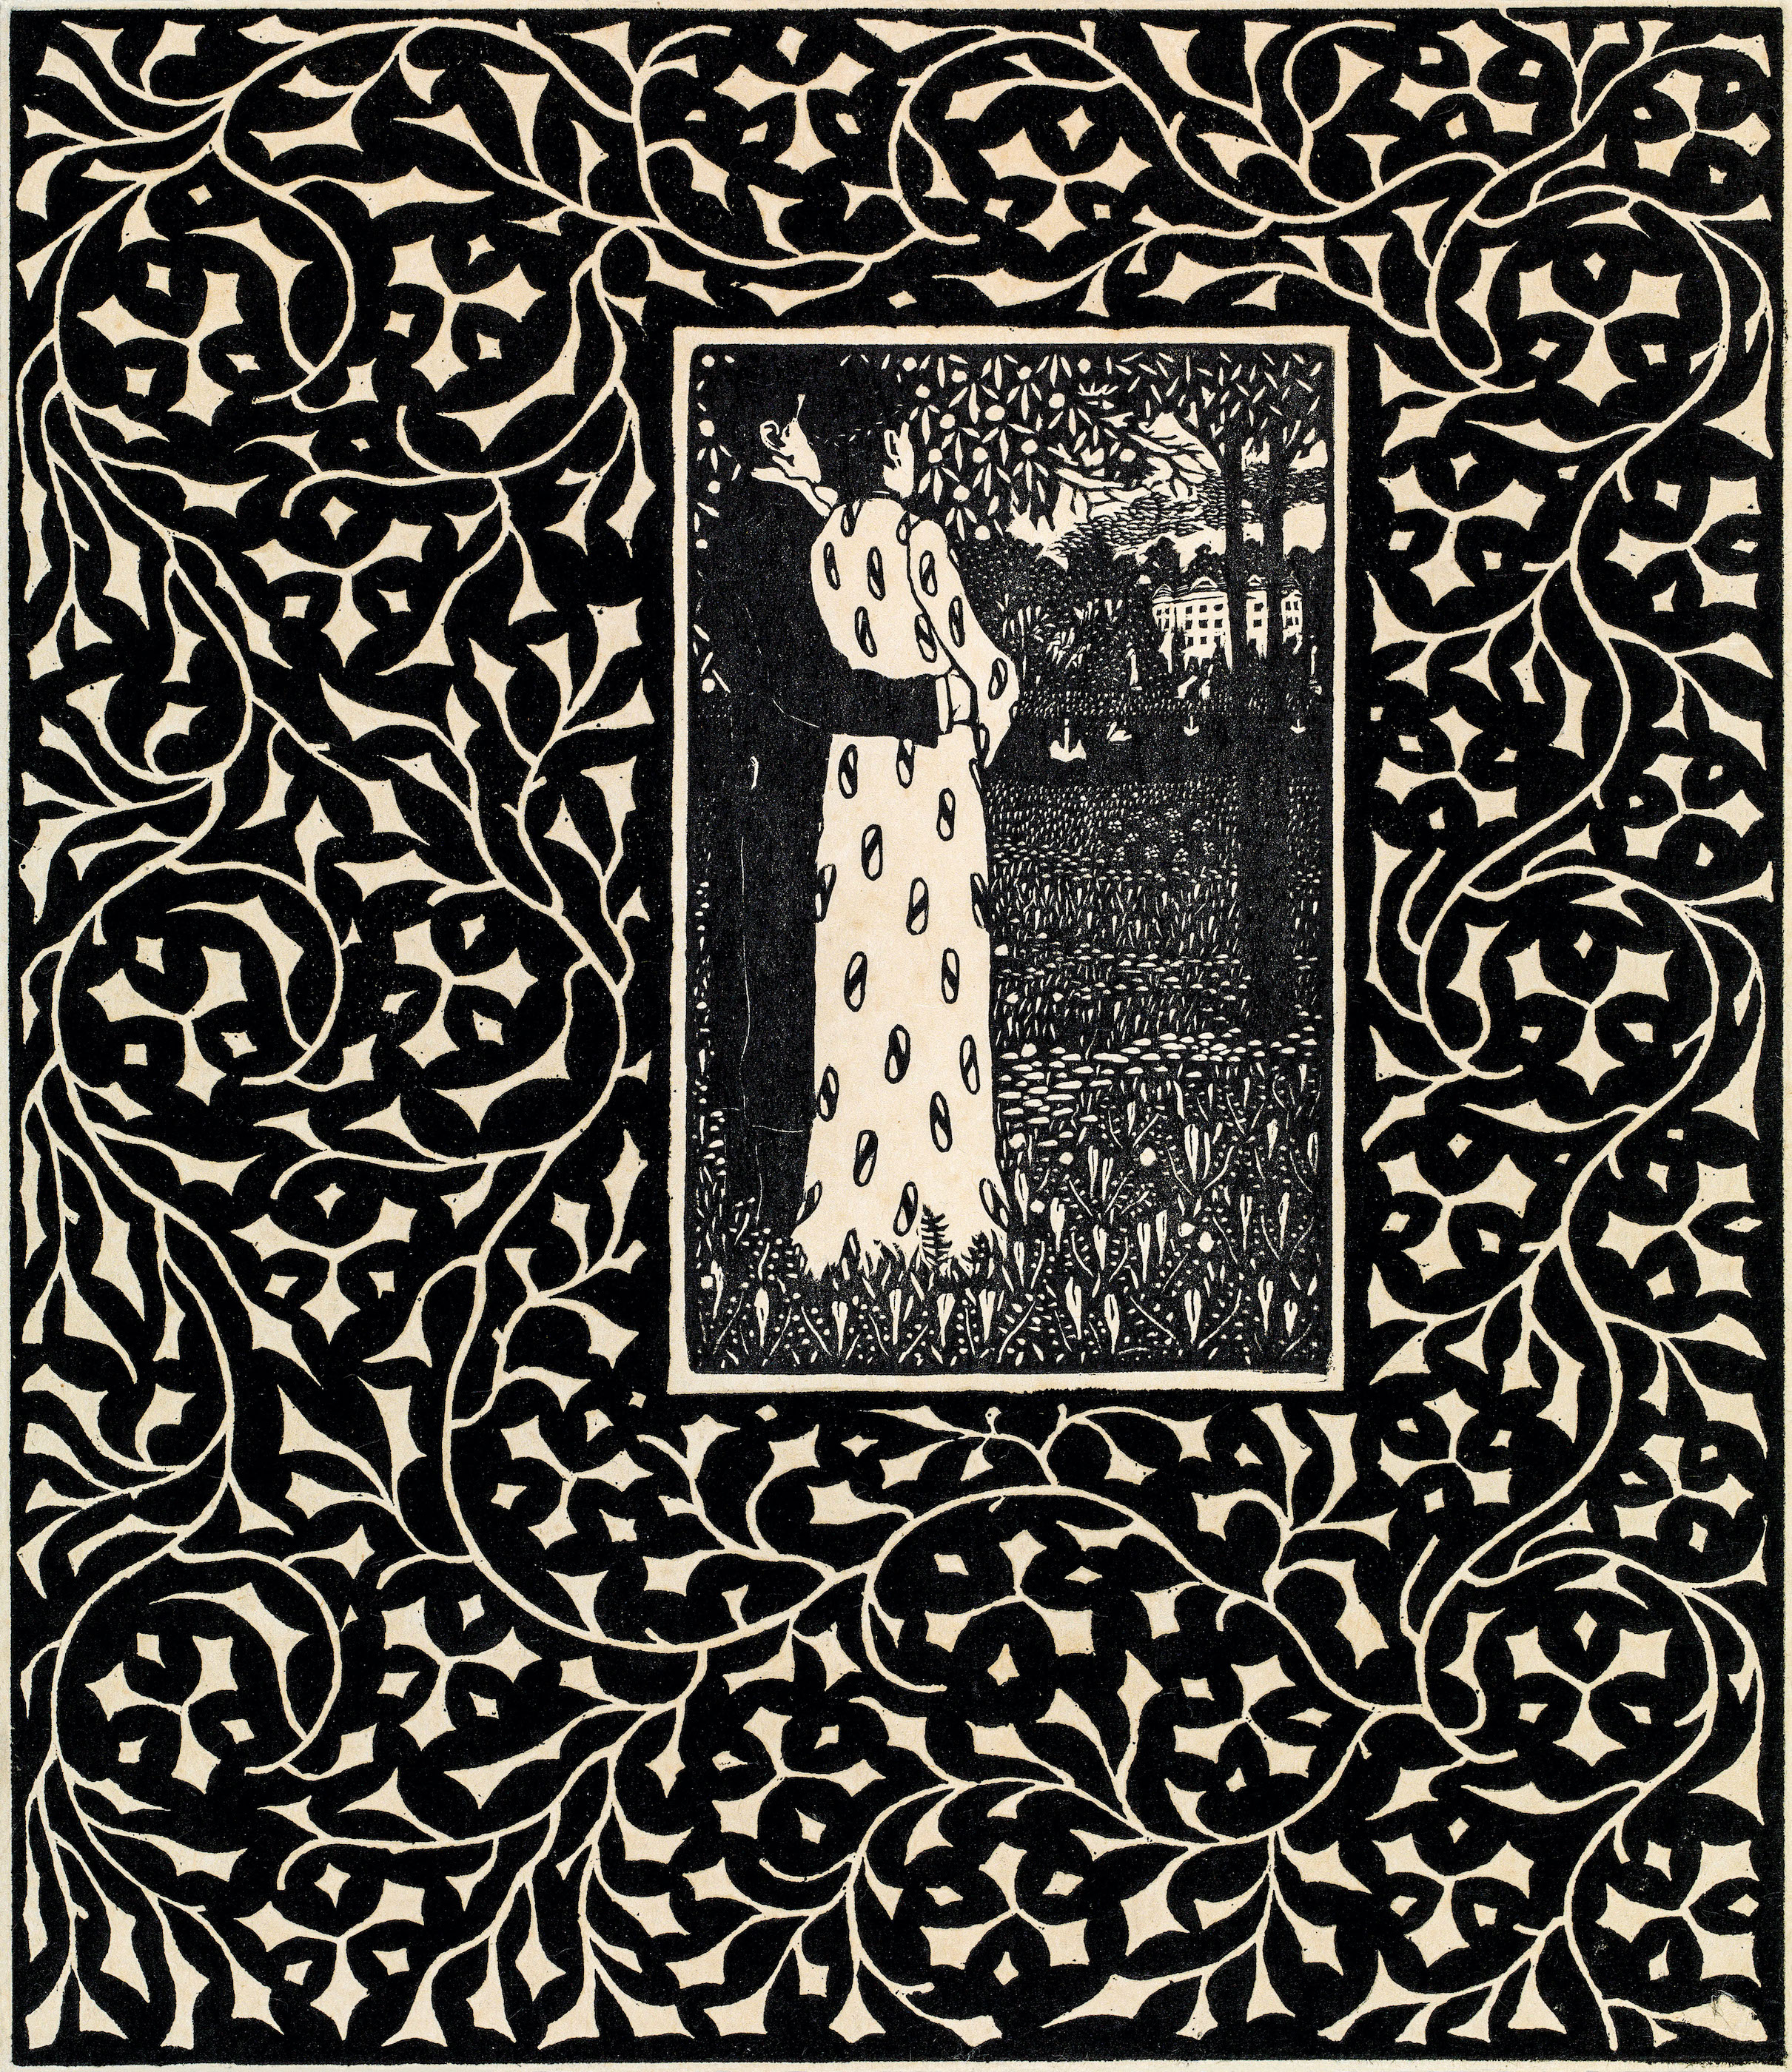 Le quattro stagioni by Carl Krenek - 1906 - 26,6 x 22,1 cm collezione privata